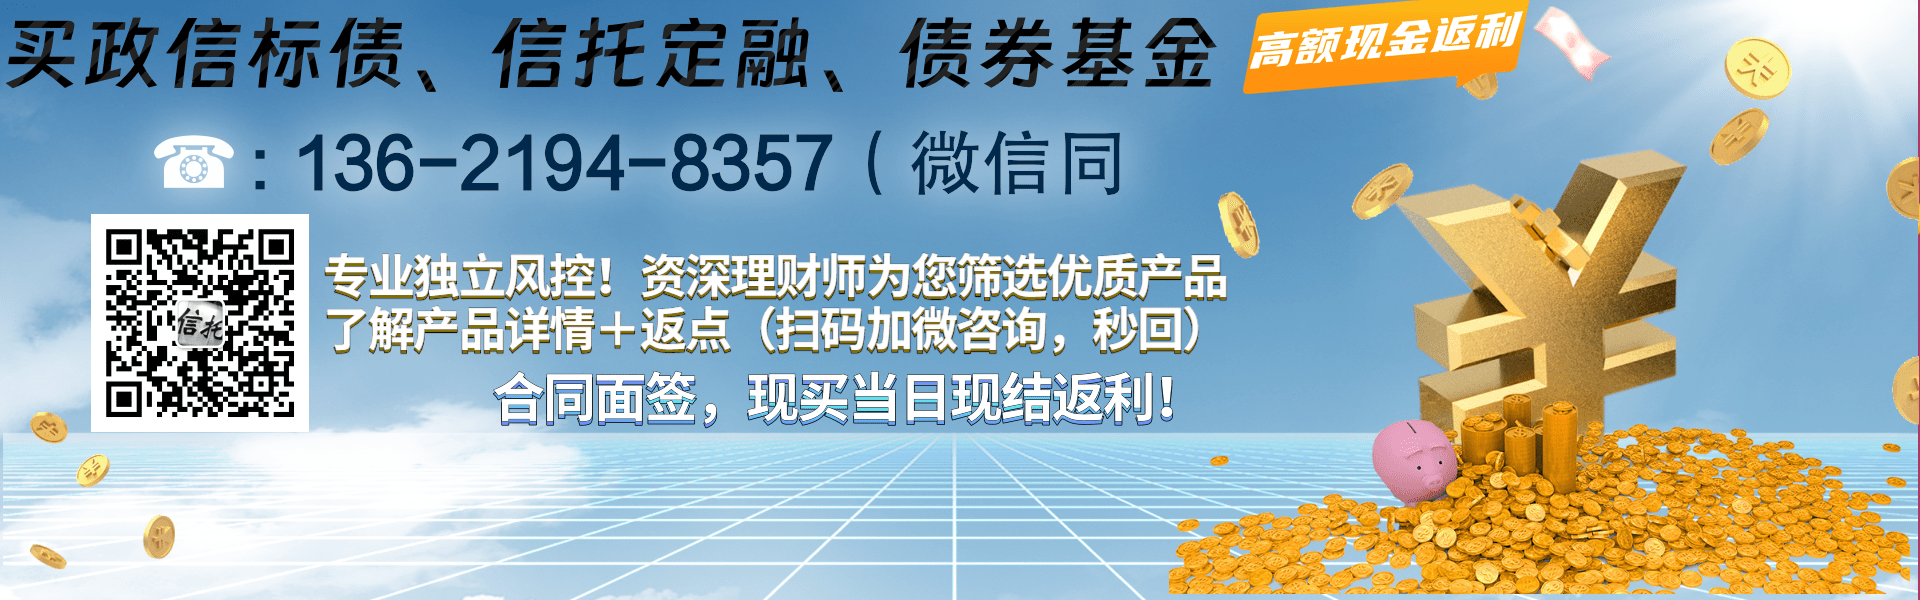 简阳市现代工业投资发展2023年债权资产拍卖项目